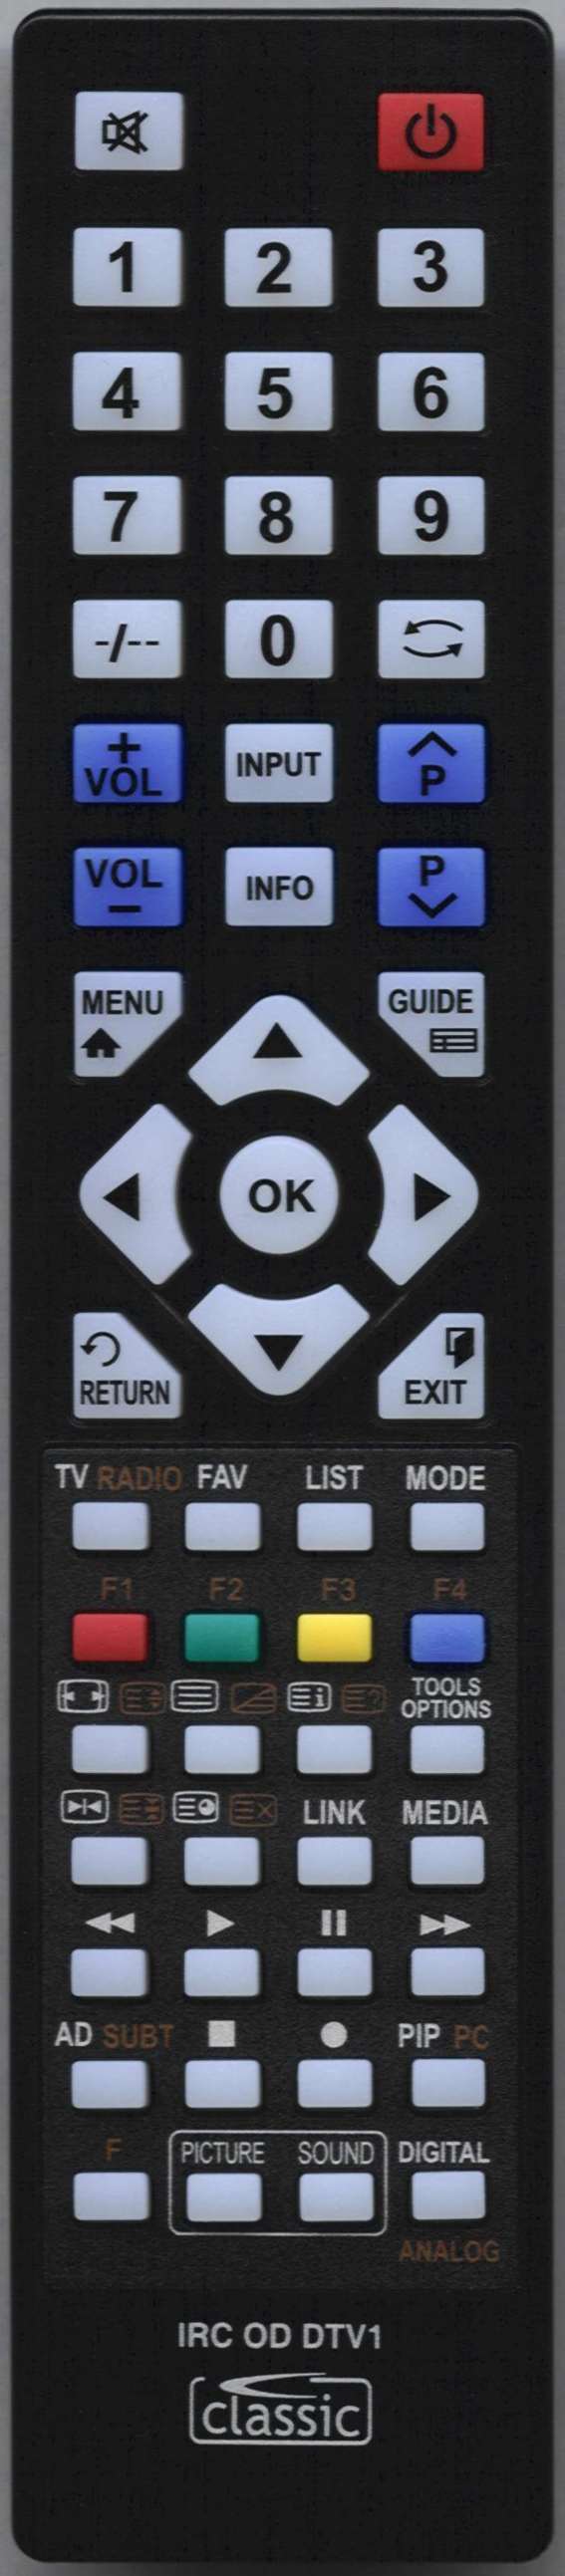 Samsung UE49KU6400S Remote Control Alternative